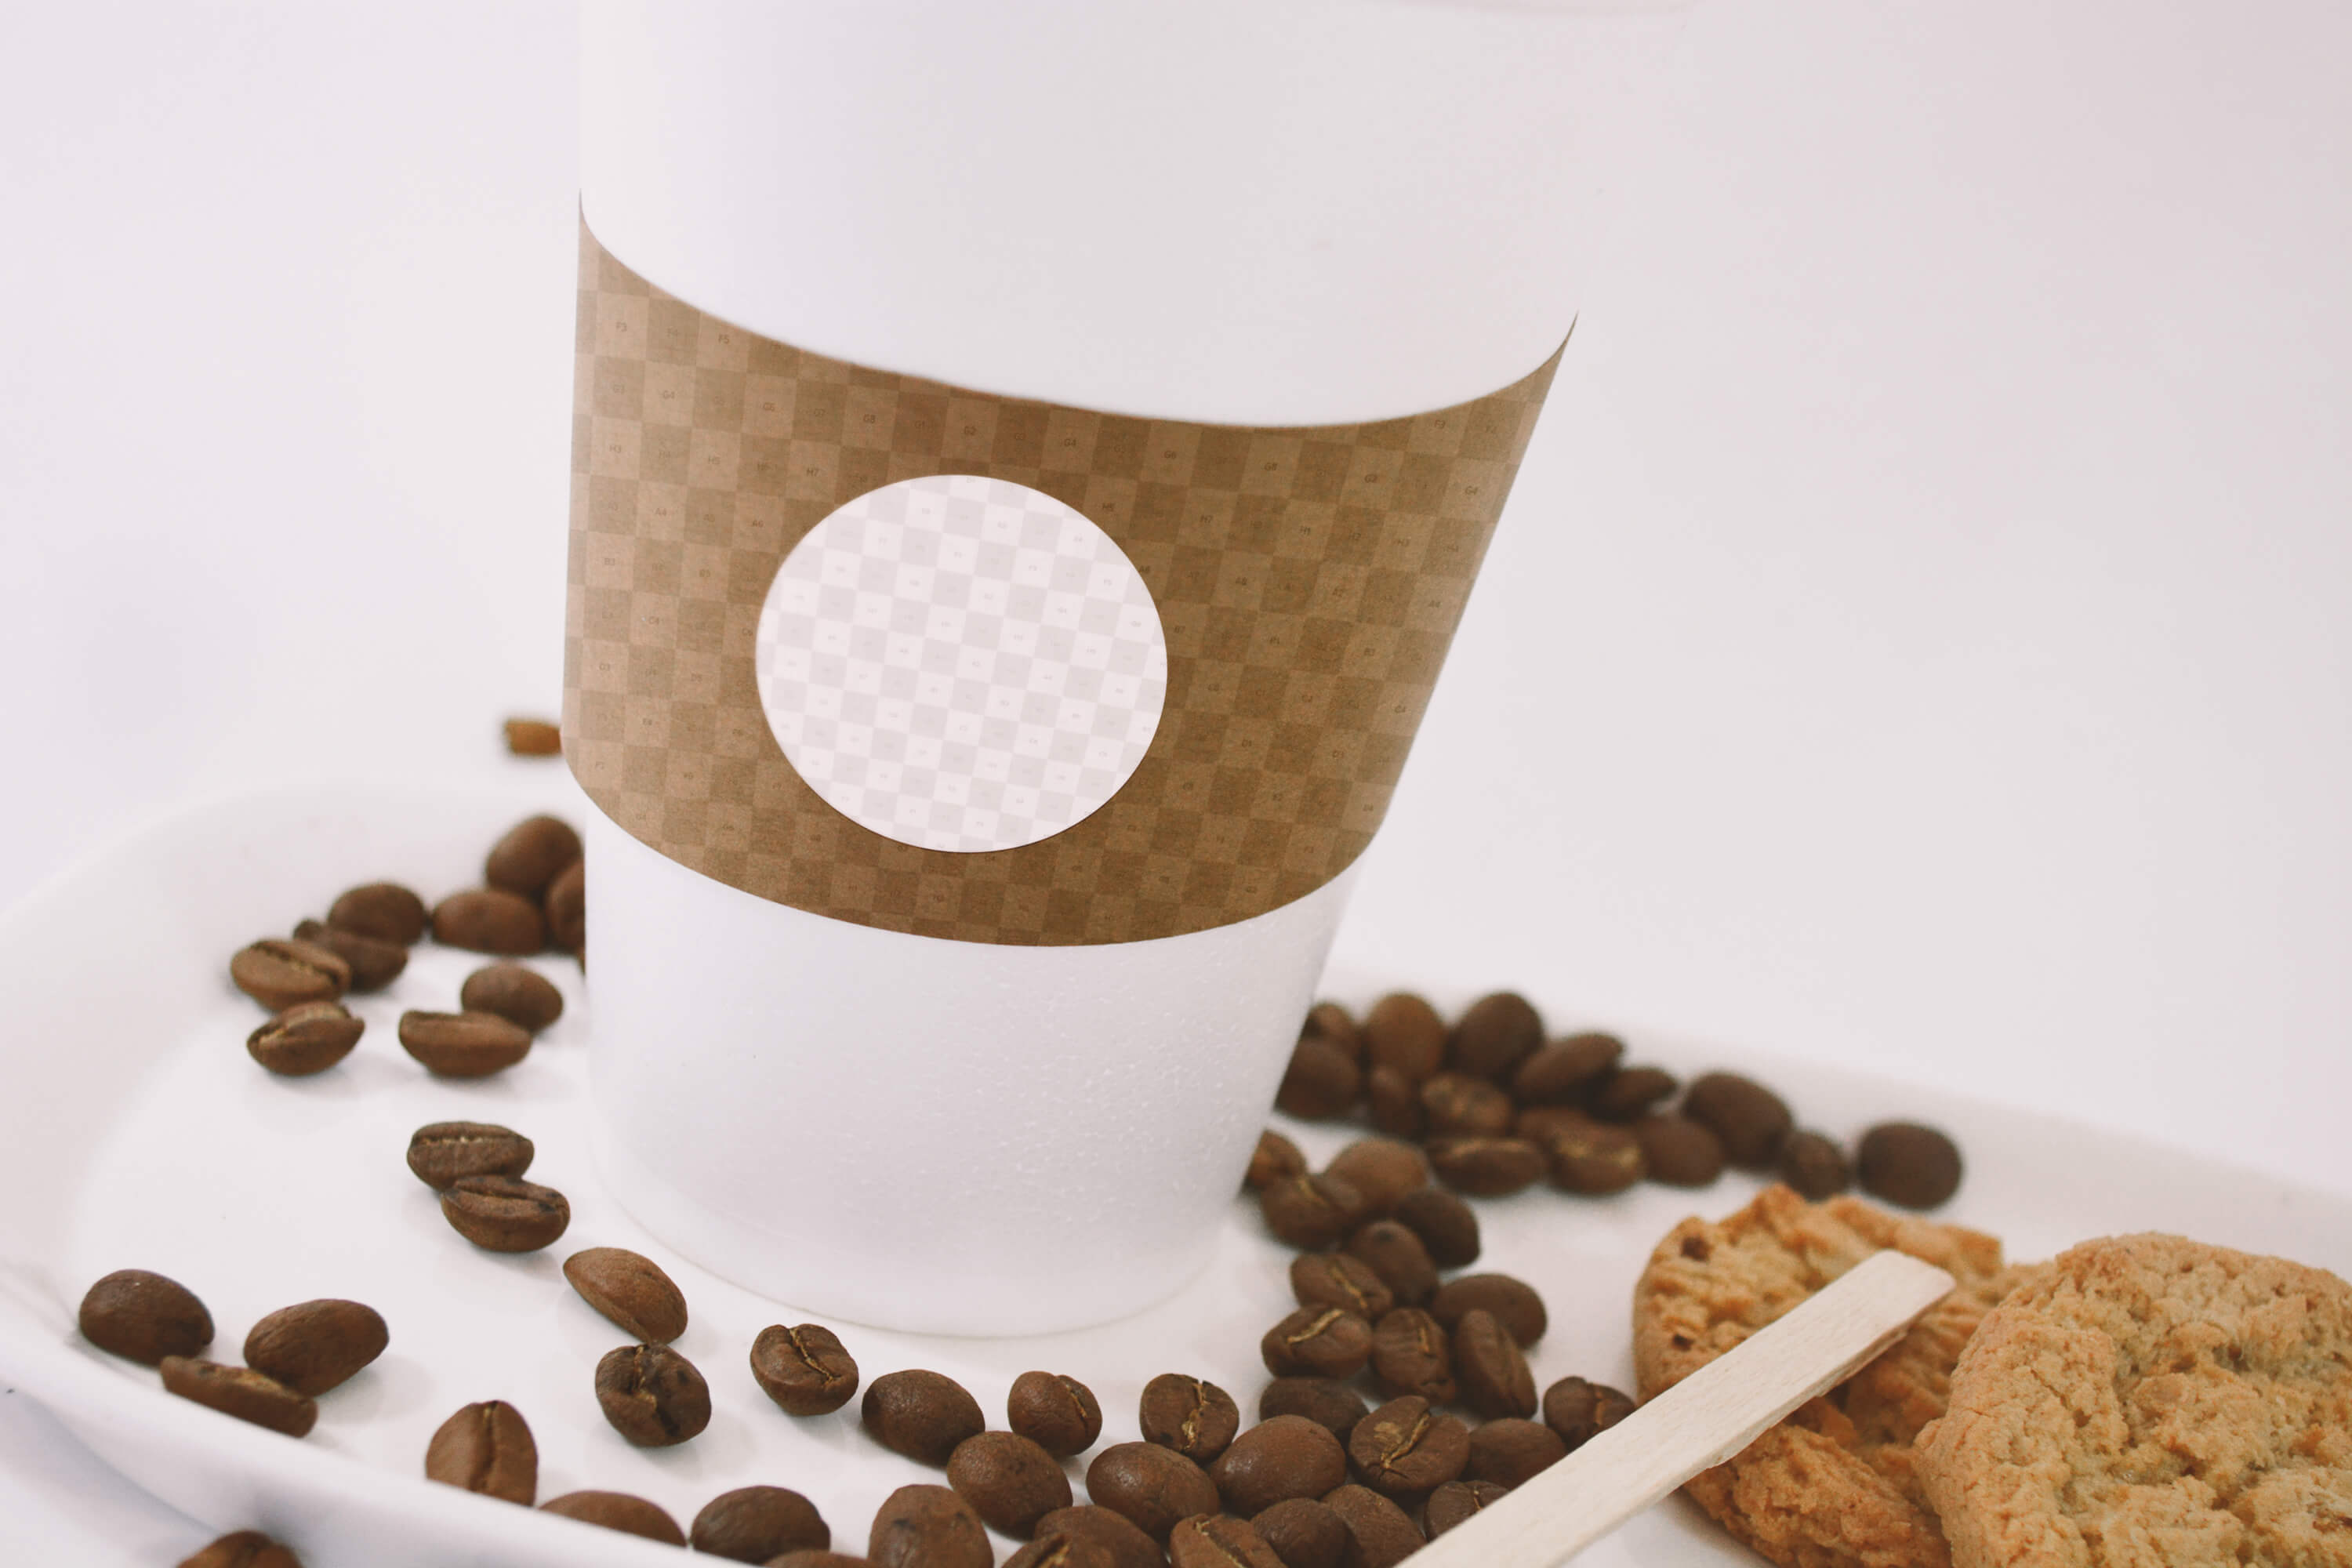 咖啡品牌VI设计预览咖啡杯特写视图样机 Large Coffee Cup Mockup – Close up View插图(1)